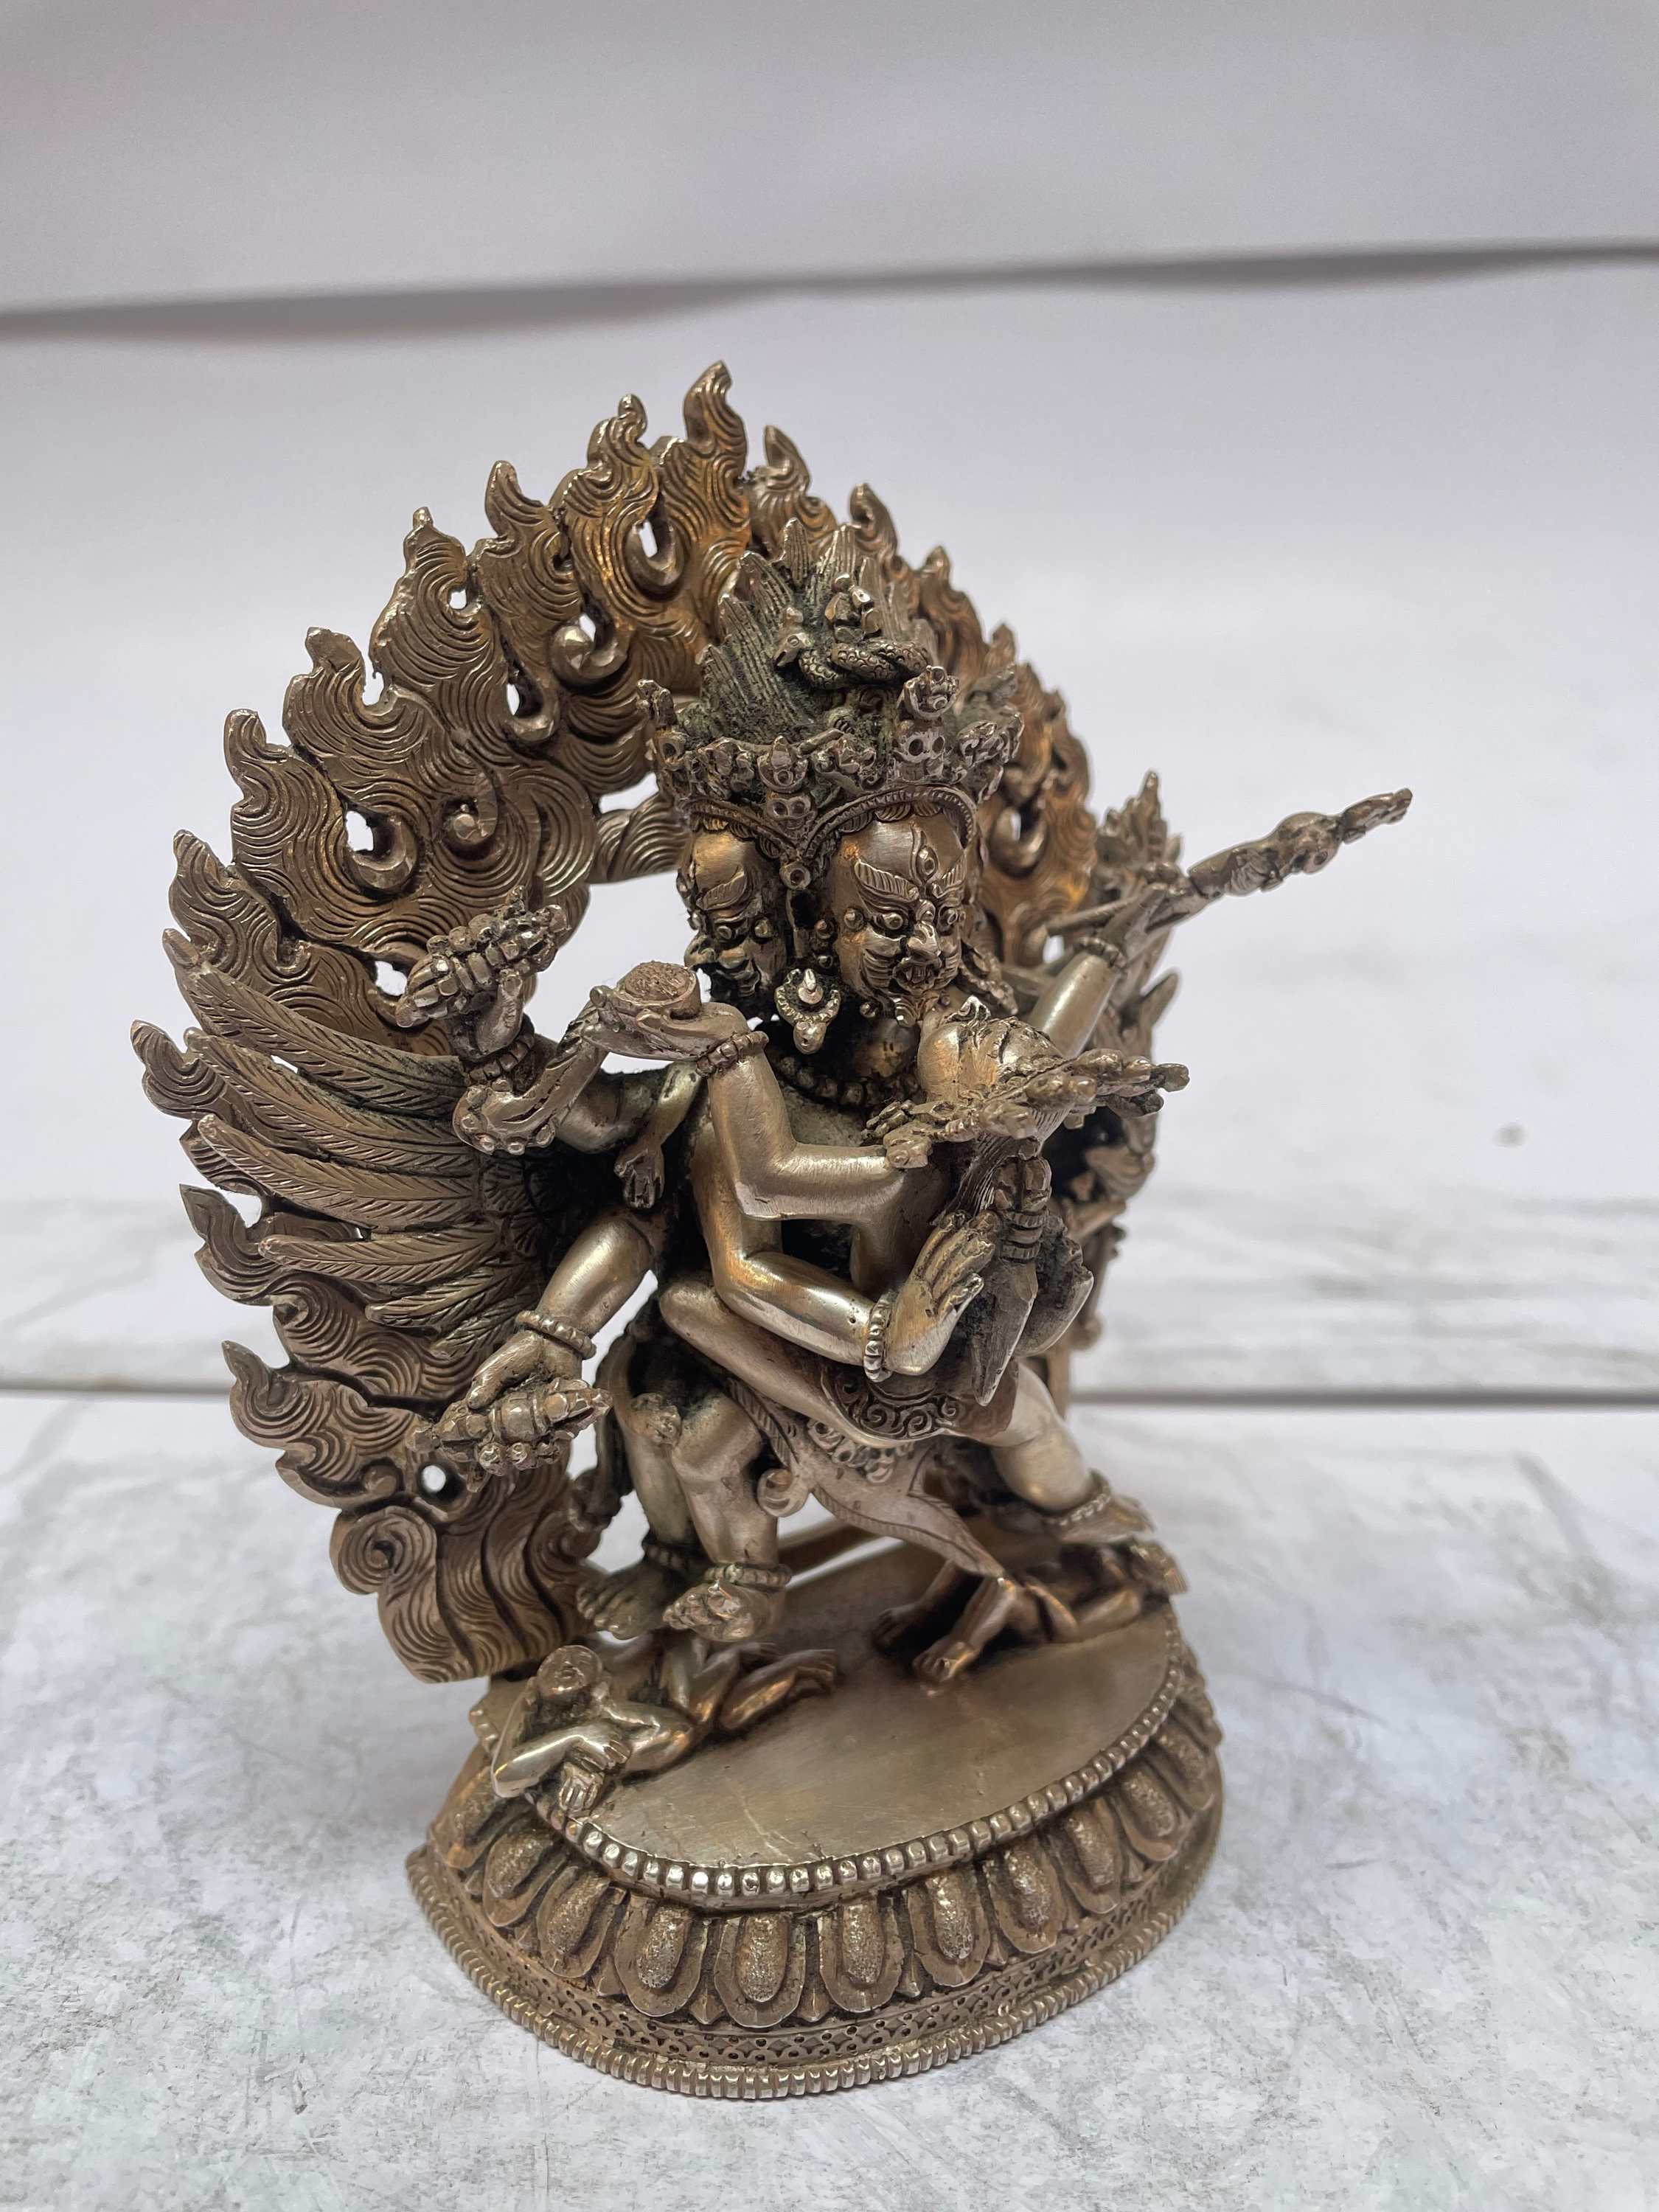 master Quality, Sterling Silver, 596 Gram Statue Of Vajrakilaya - Dorje Phurba - Heruka, old Stock